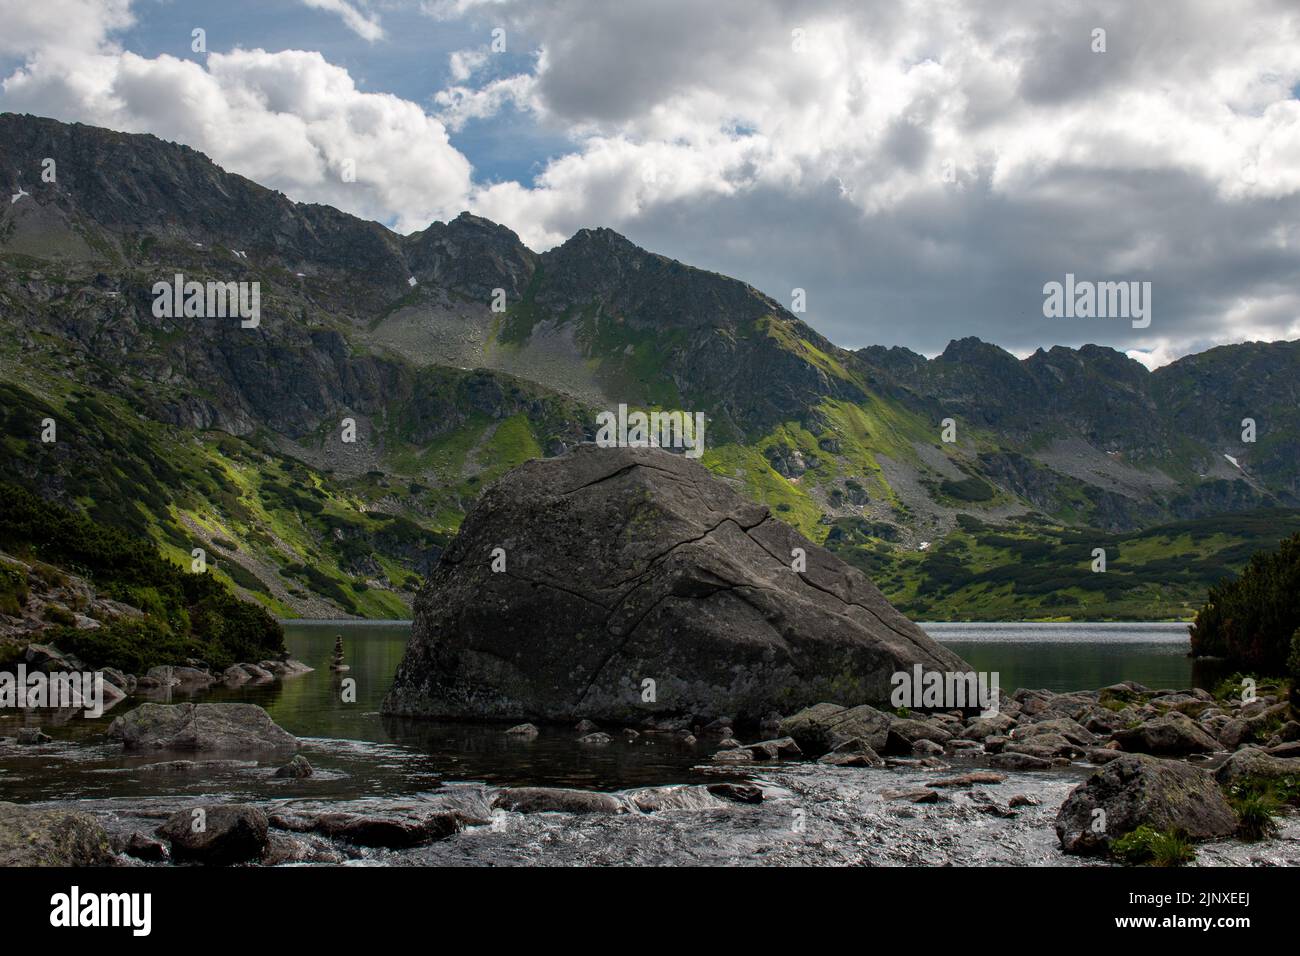 Una gran roca en el lago Wielki Staw en el valle de los cinco lagos, Polonia Foto de stock